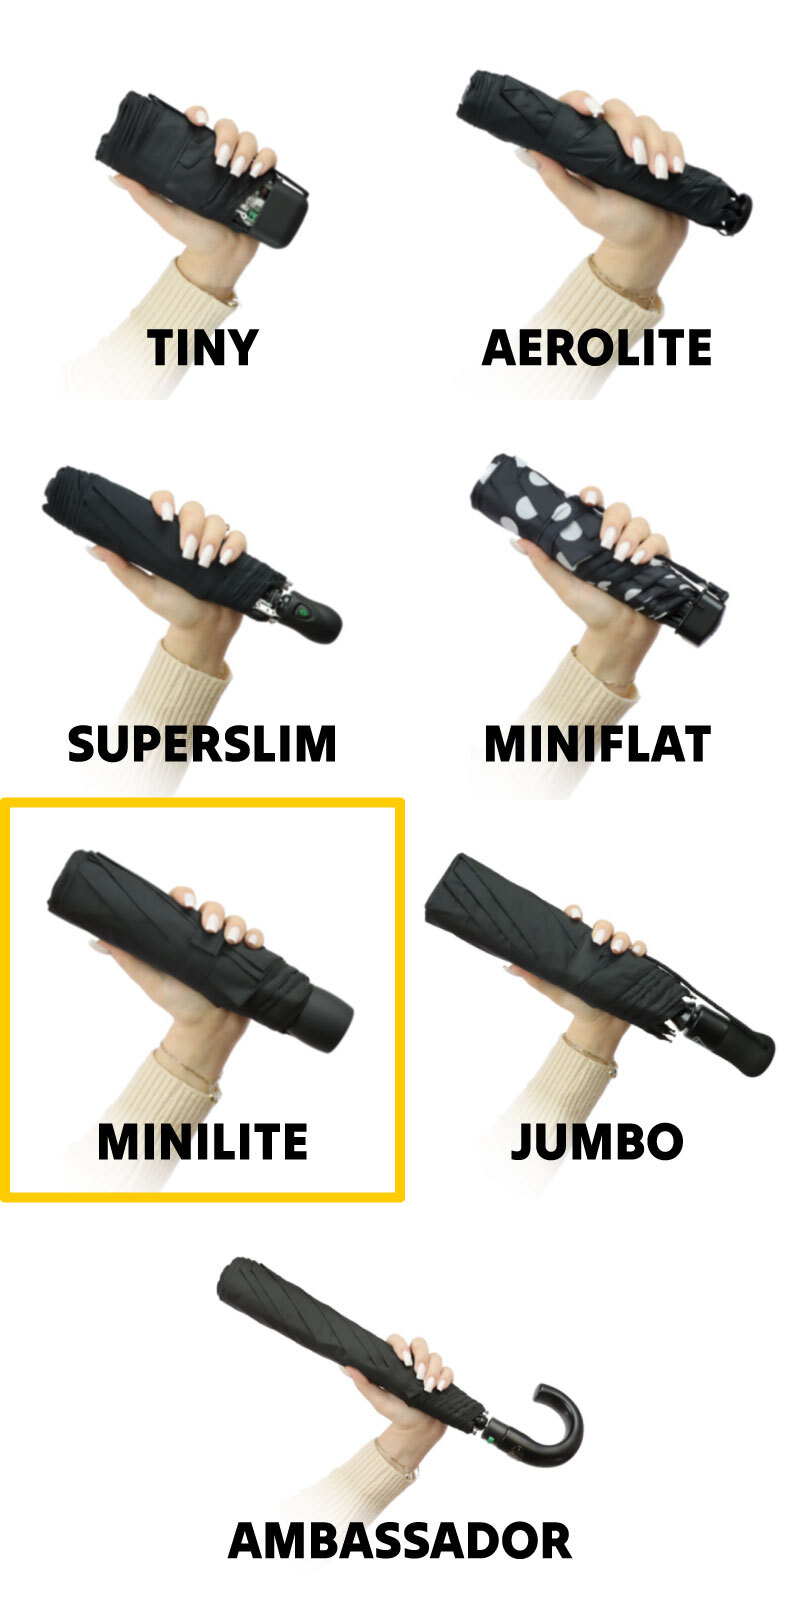 Fulton Minilite compact umbrellas size comparison image